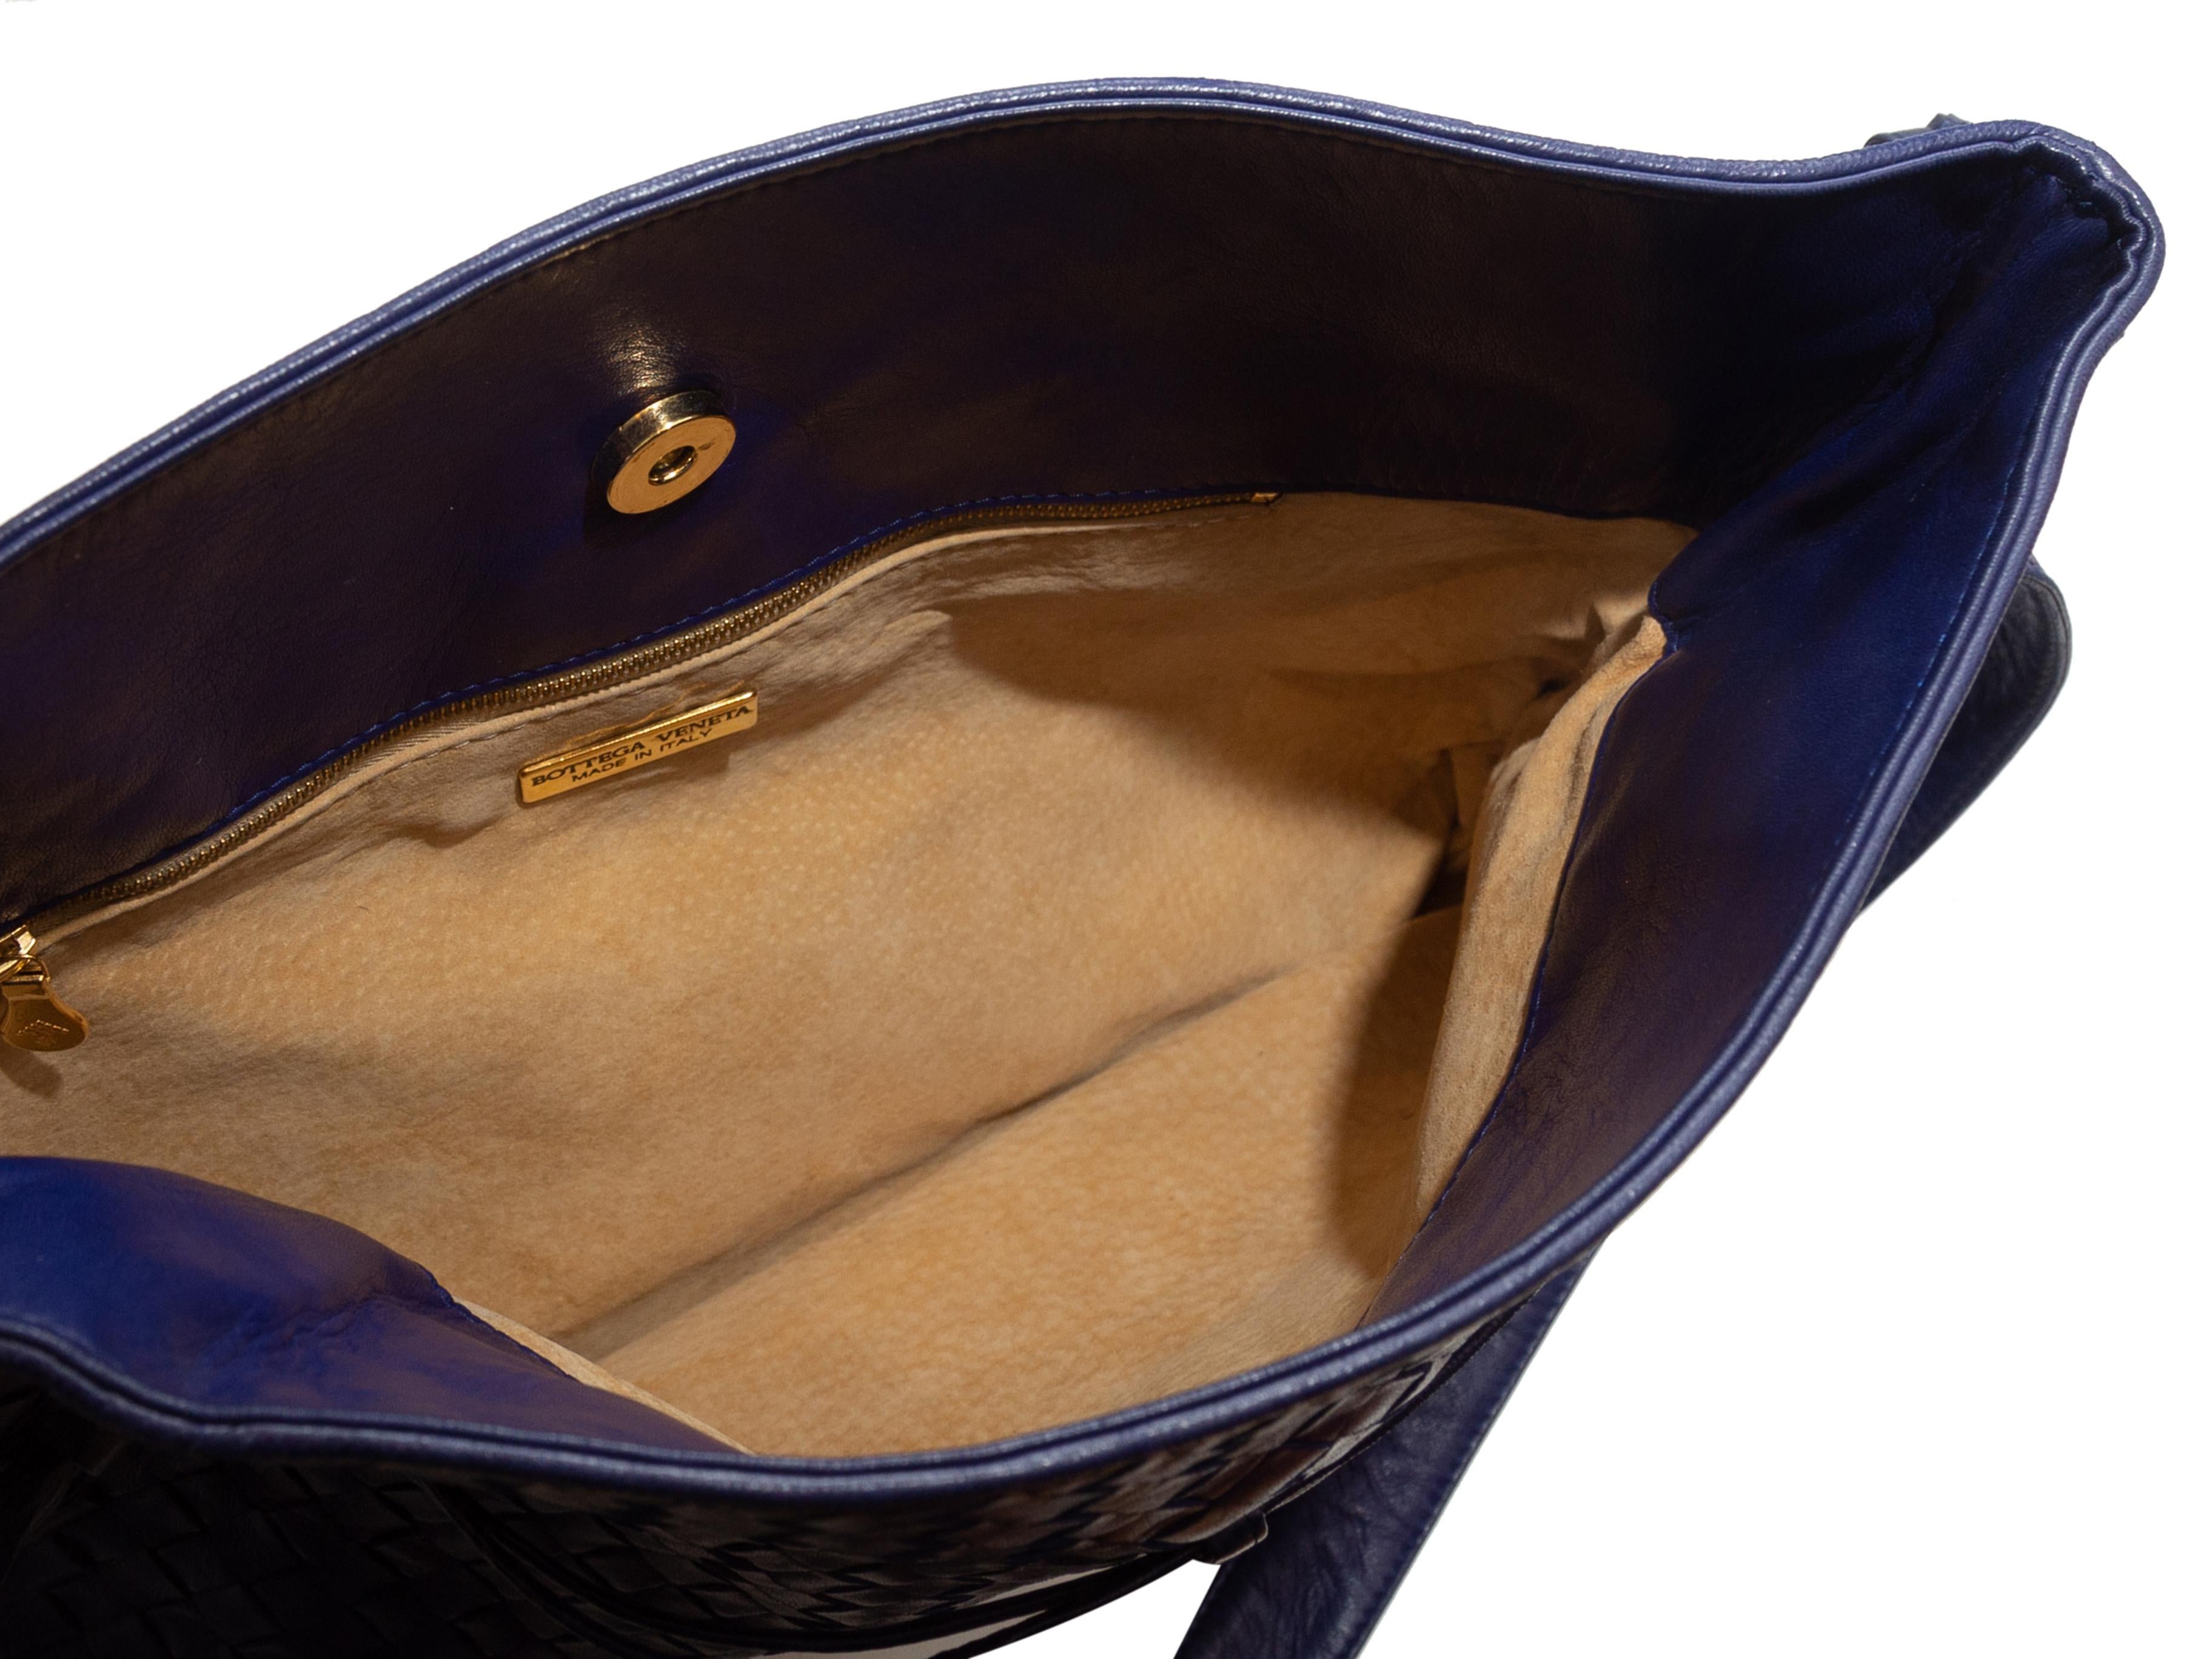 Product details: Vintage blue Intrecciato leather shoulder bag by Bottega Veneta. Gold-tone hardware. Interior zip pocket. Adjustable shoulder strap. Magnetic closure at top. 13